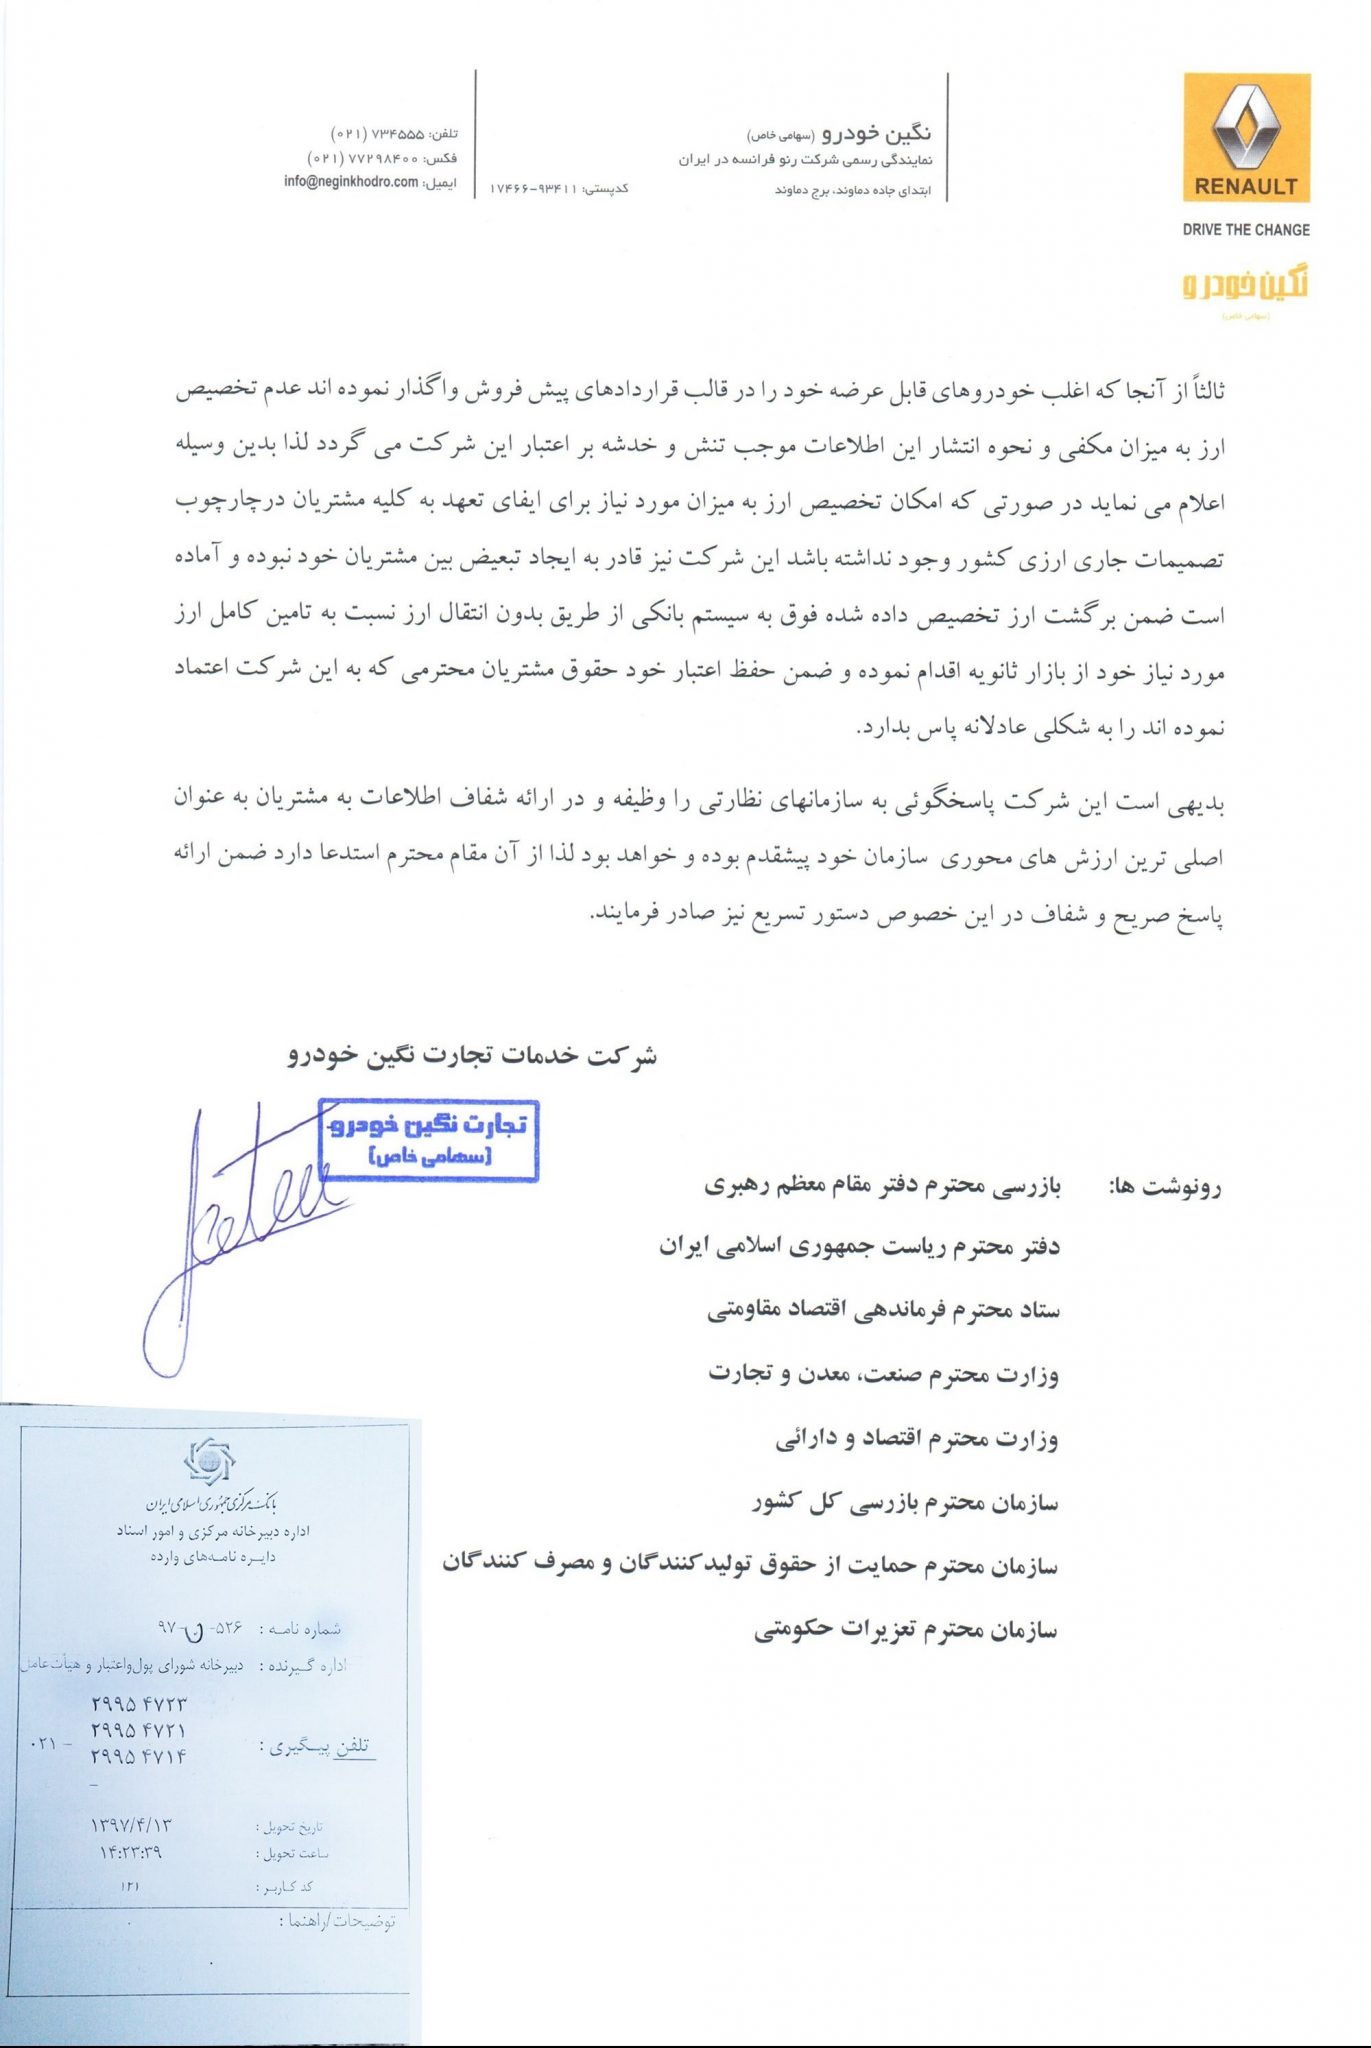 139704131647531320571110 - مکاتبه نگین خودرو با بانک مرکزی جمهوری اسلامی ایران